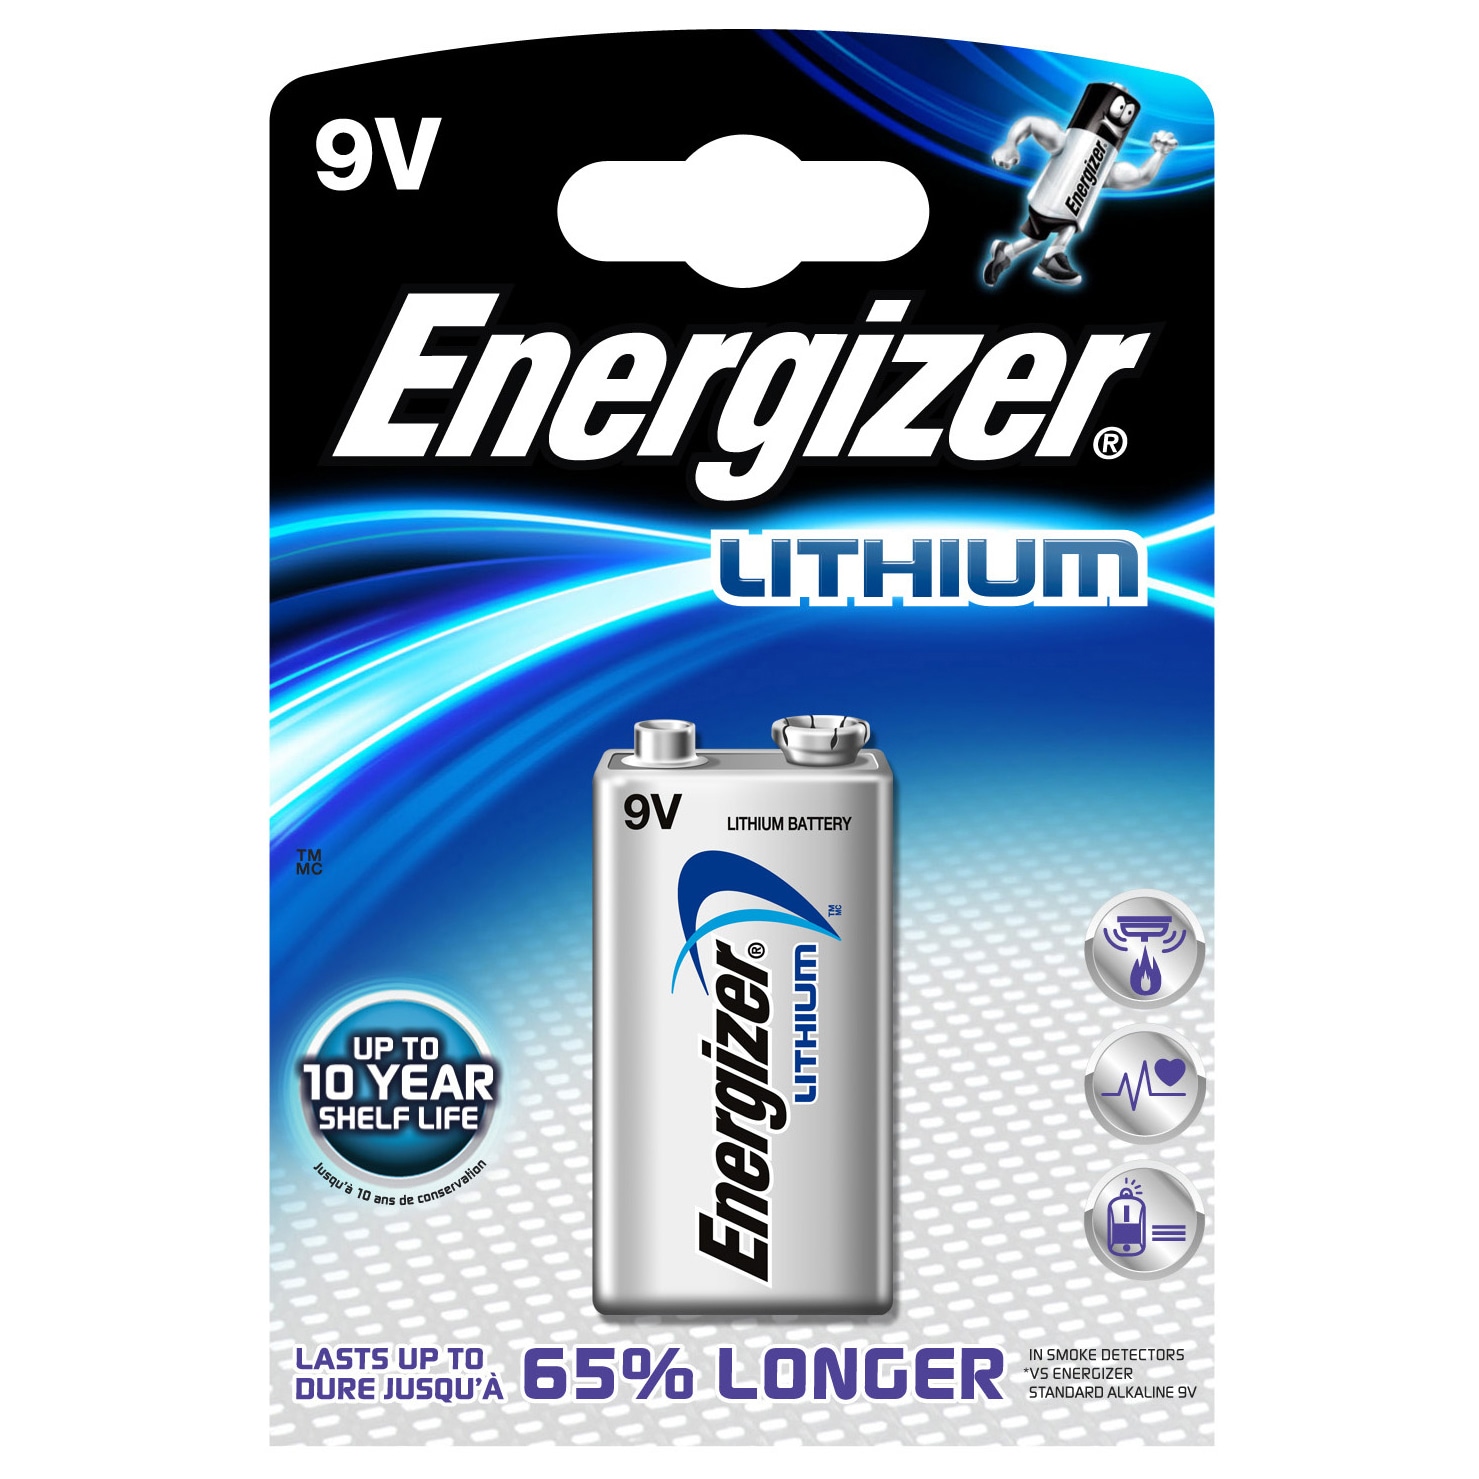 Energizer universalt 9V batteri | Elgiganten